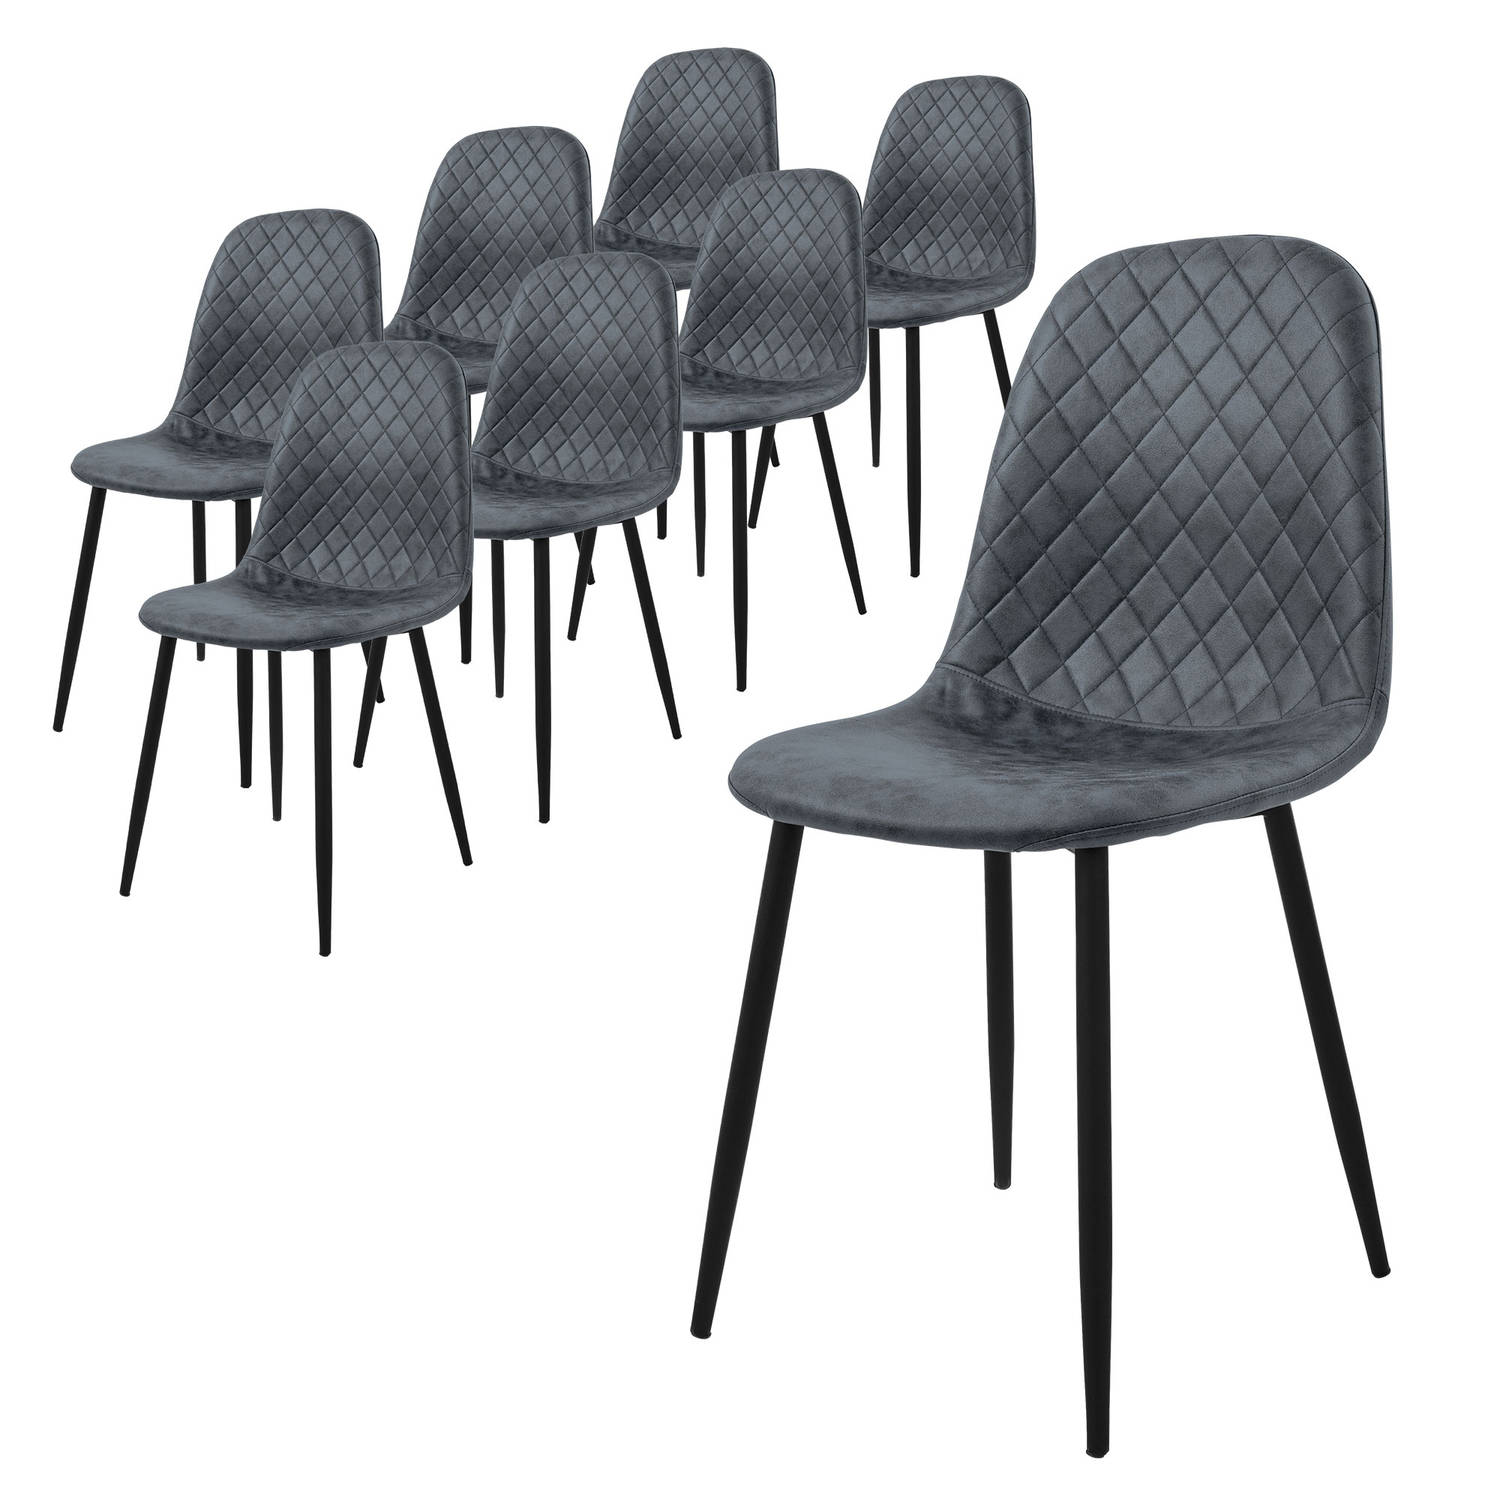 ML-Design eetkamerstoelen set van 8 antraciet keukenstoel van kunstleer woonkamerstoel met rugleuning gestoffeerde stoel met metalen poten ergonomische stoel voor eettafel eetkamer